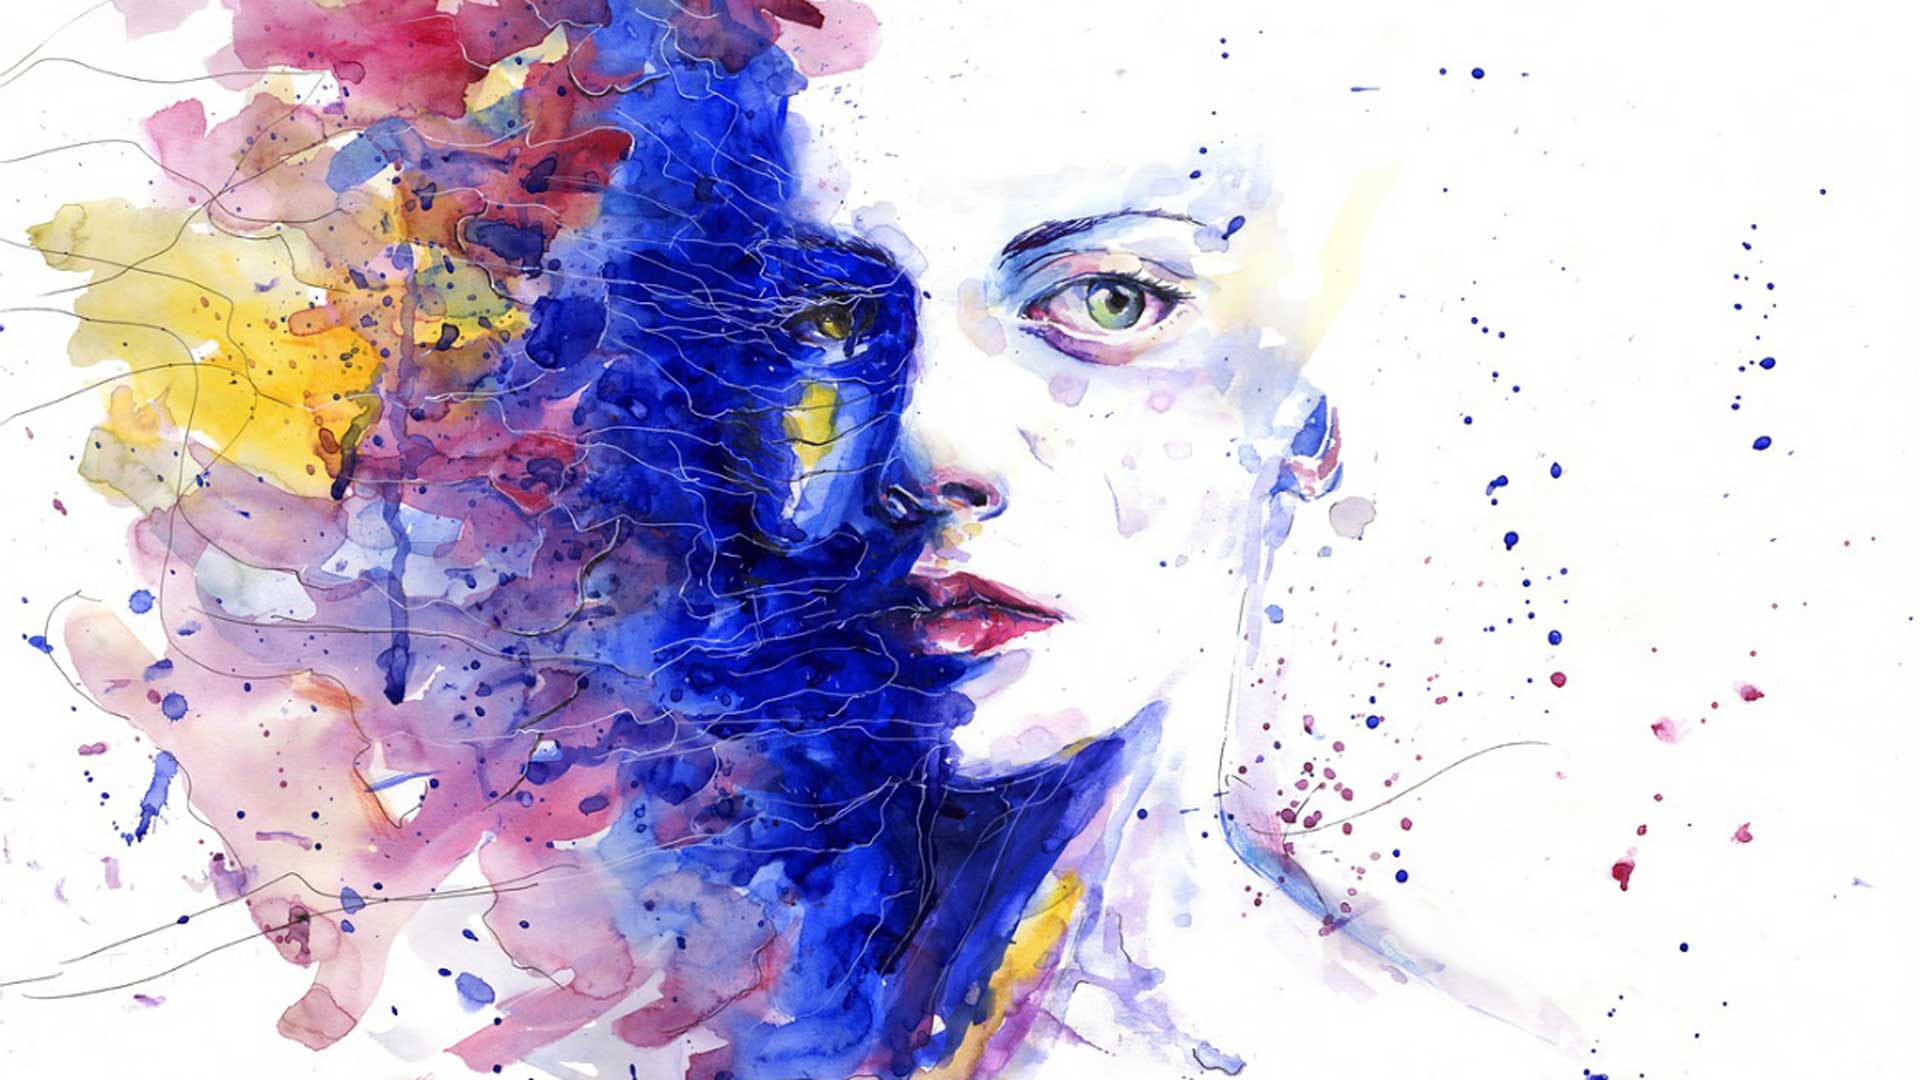 πίνακας που απεικονίζει γυναικείο πρόσωπο μέσα από το οποίο αναδύονται χρώματα